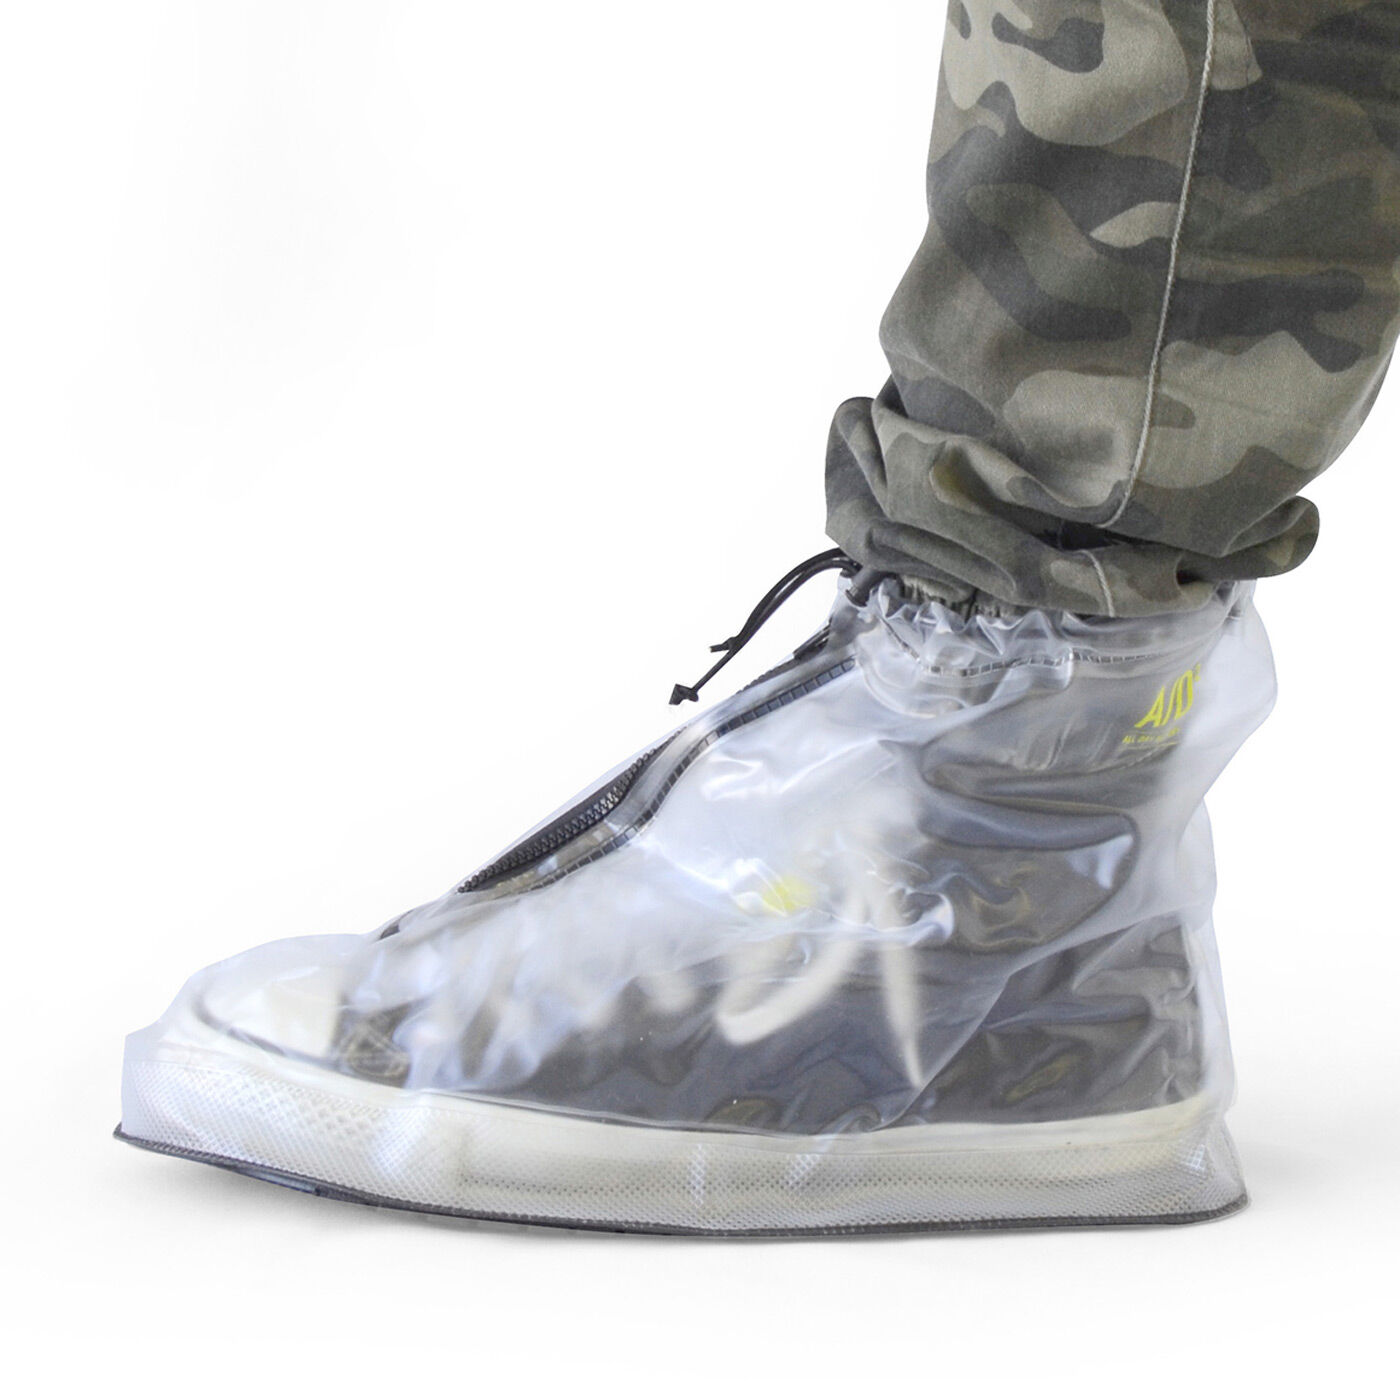 フェリシモの雑貨 Kraso|靴を雨や泥から守る　たたんで持ち歩けるシューズレインカバー〈透明〉|パンツのすそも入れられます。